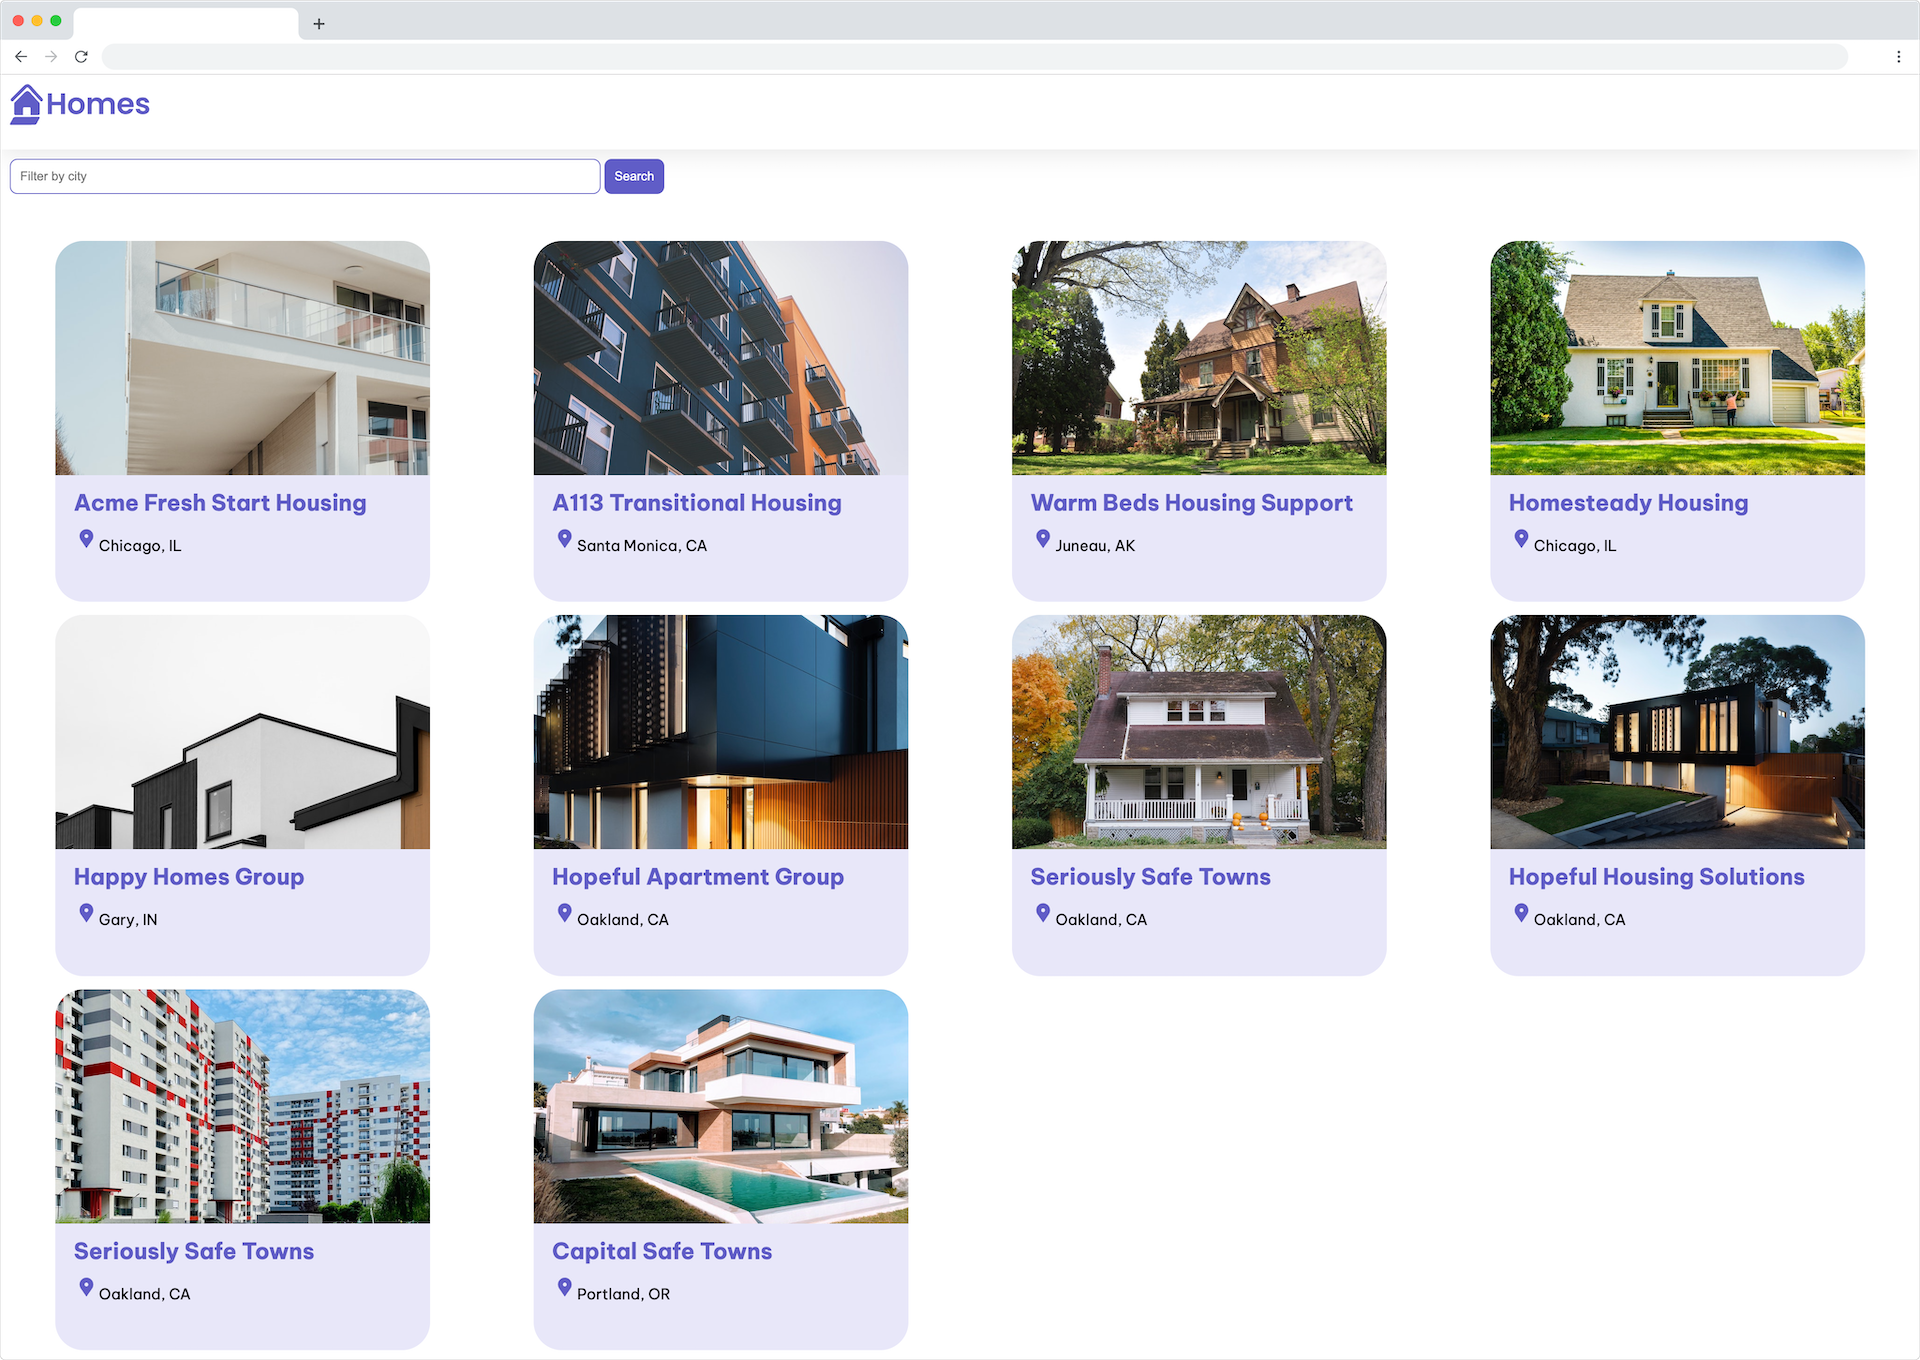 рамка браузера приложения homes-app, отображающая логотип, поле ввода текста фильтра, кнопку поиска и сетку карточек расположения жилья